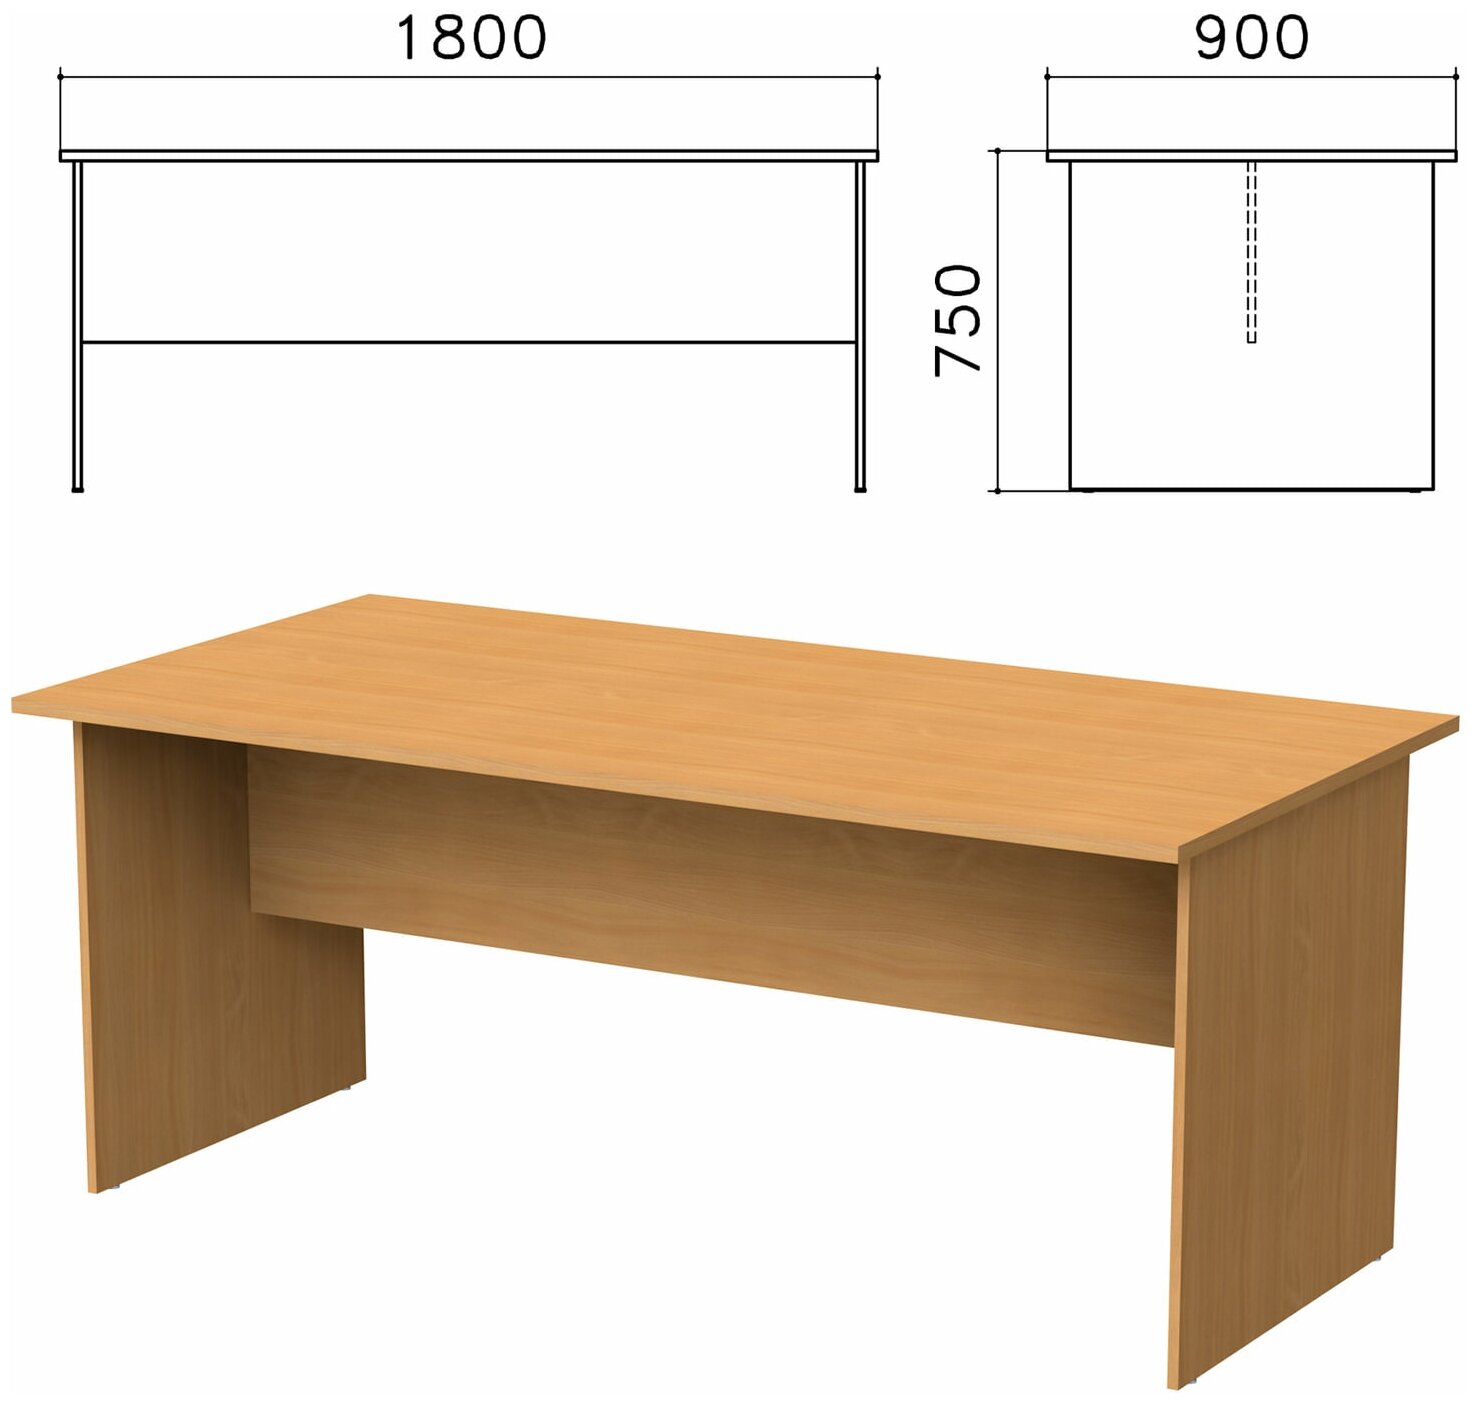 Стол для переговоров "Монолит", 1800х900х750 мм, цвет бук бавария, СМ18.1 - 1 шт.